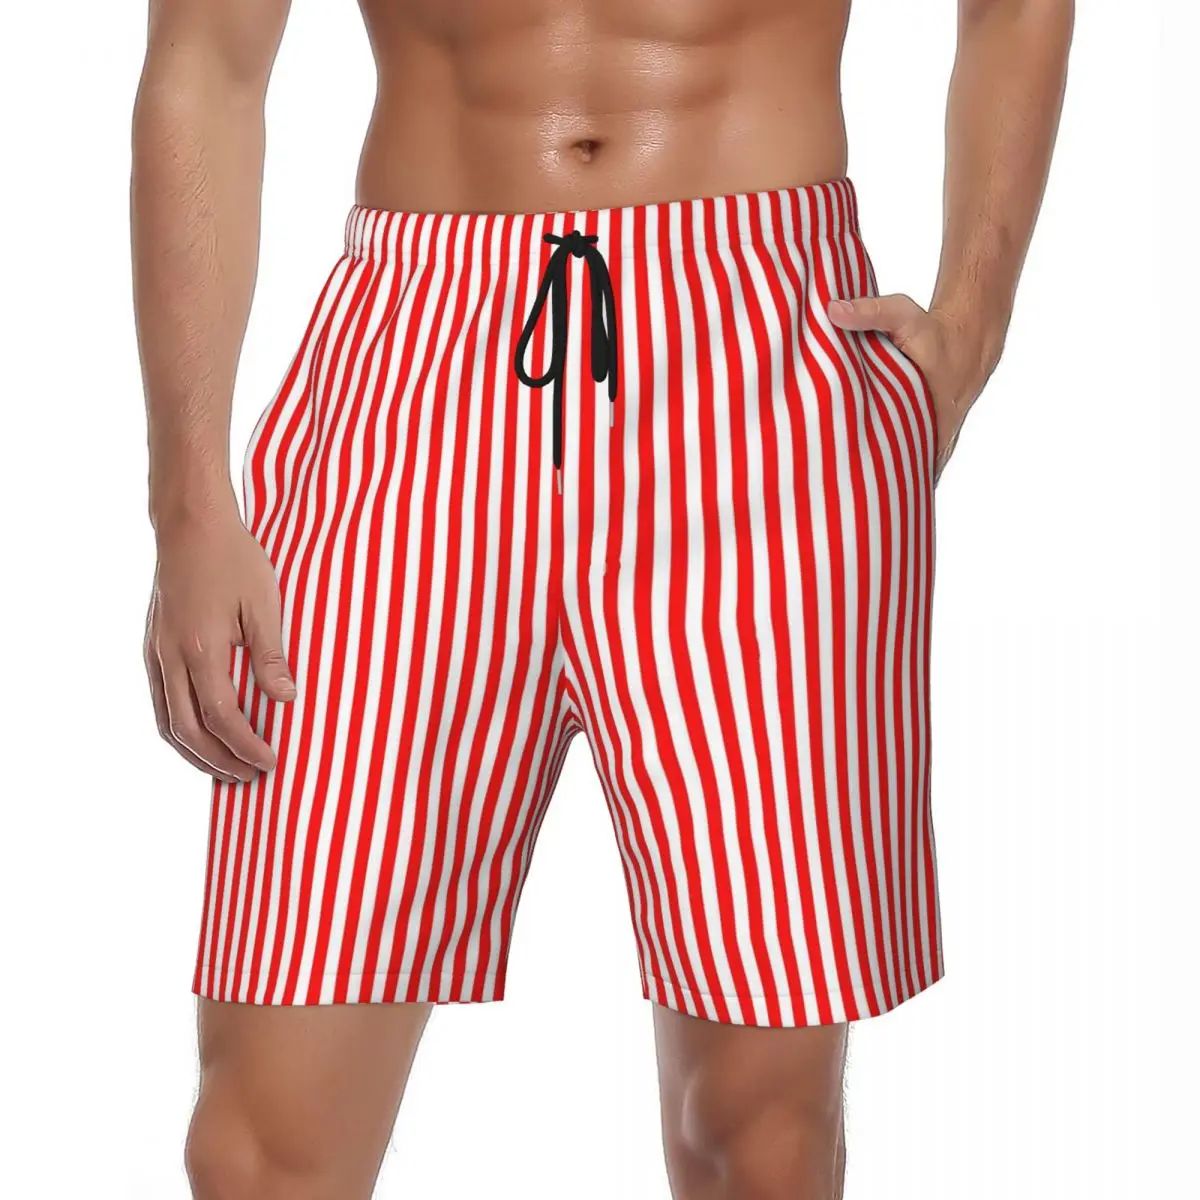 

Шорты для плавания мужские с принтом в полоску, спортивные пляжные короткие штаны, быстросохнущие повседневные плавки с узором, большие размеры, красный и белый цвета, на лето